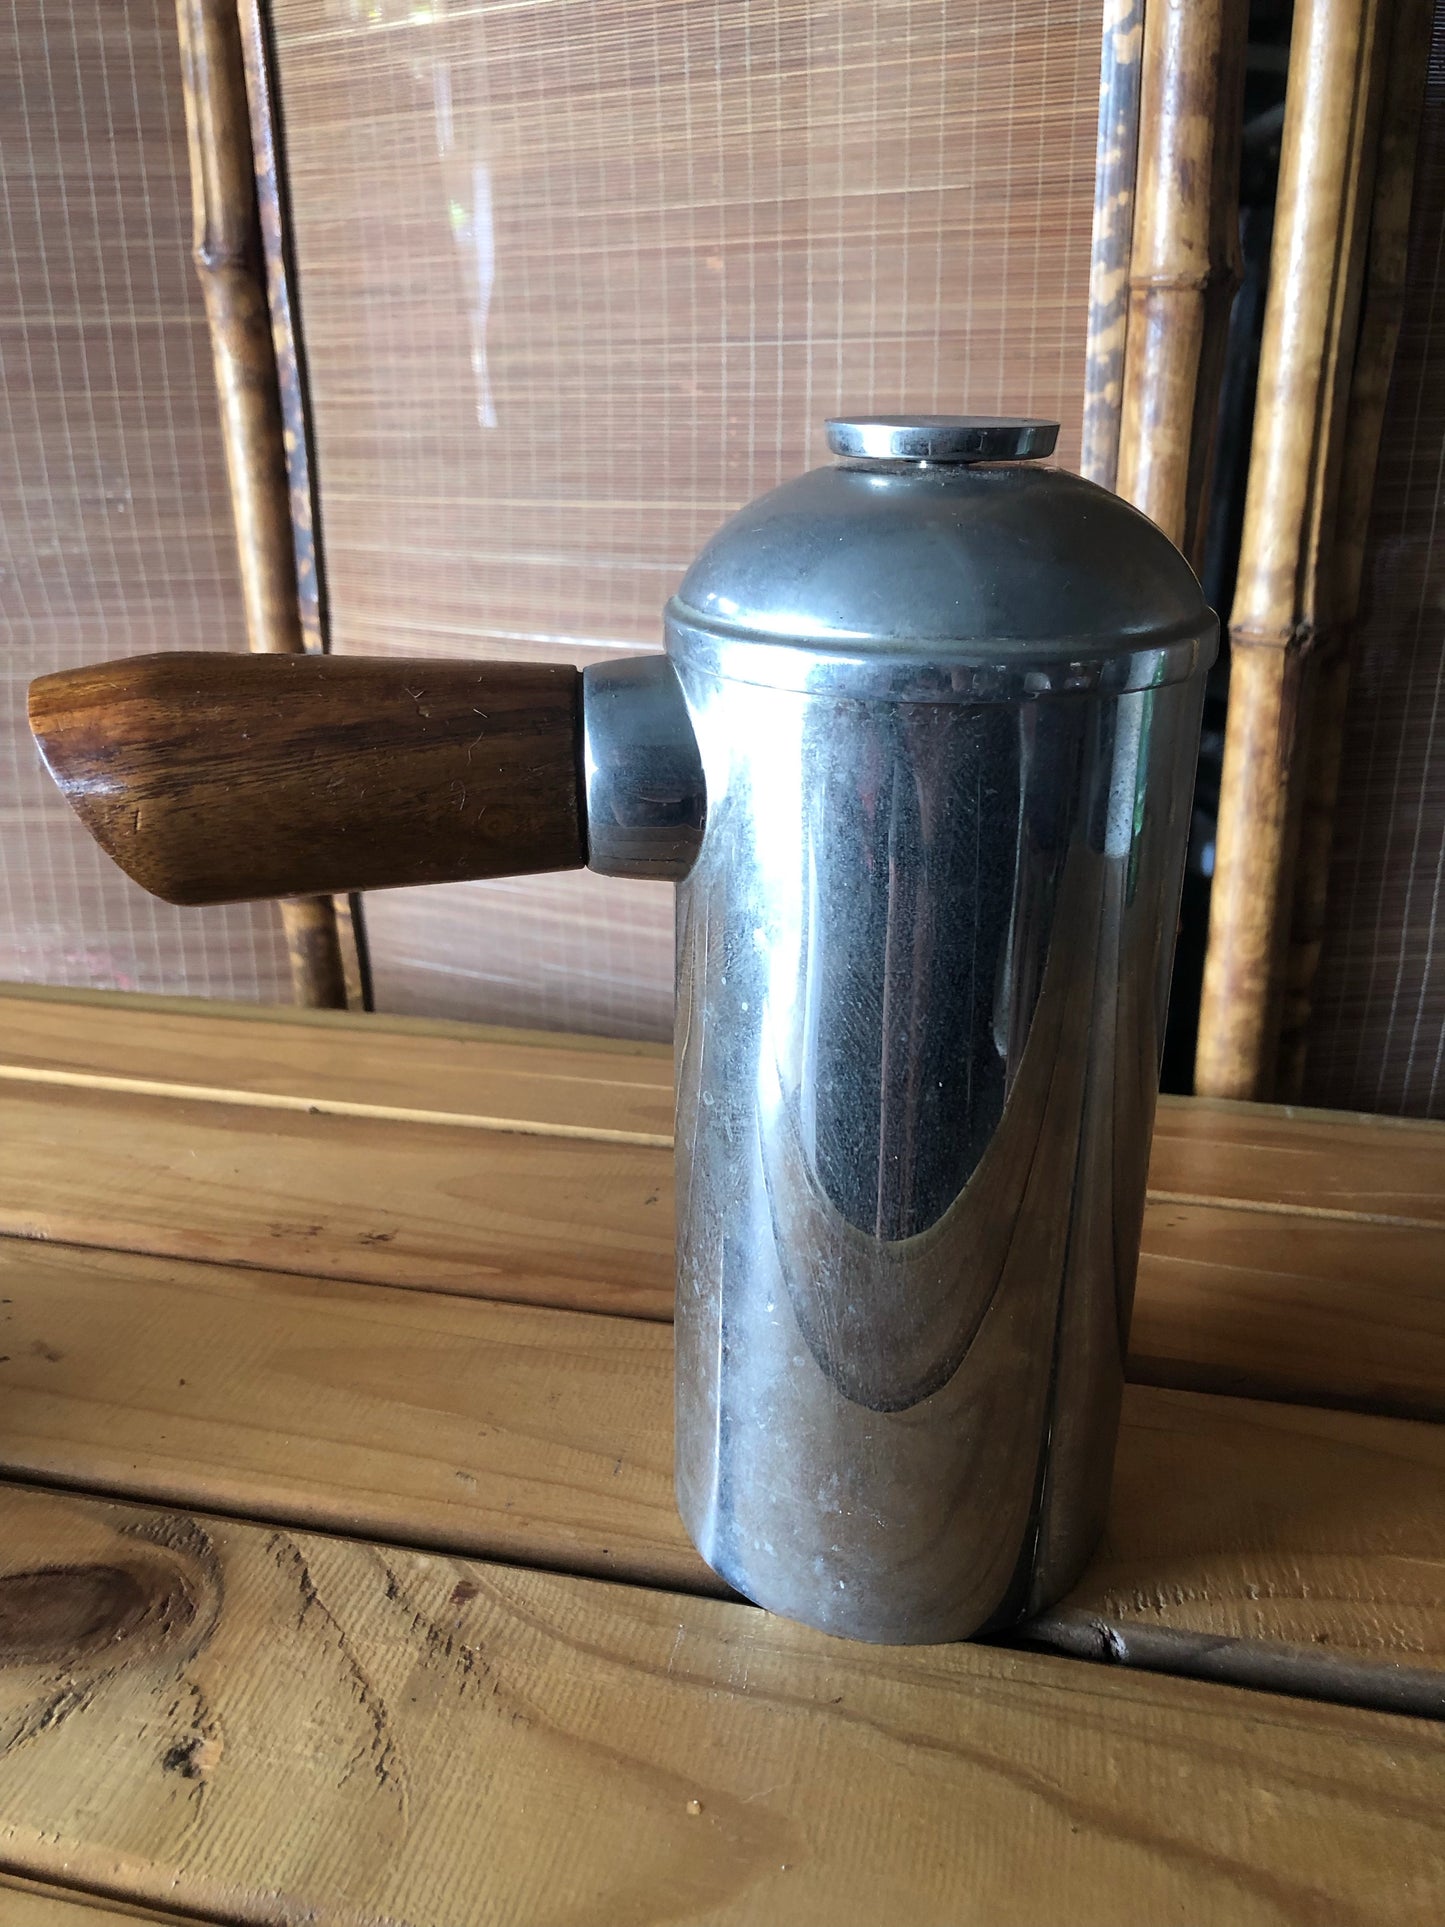 Coffee plunger kitchenalia